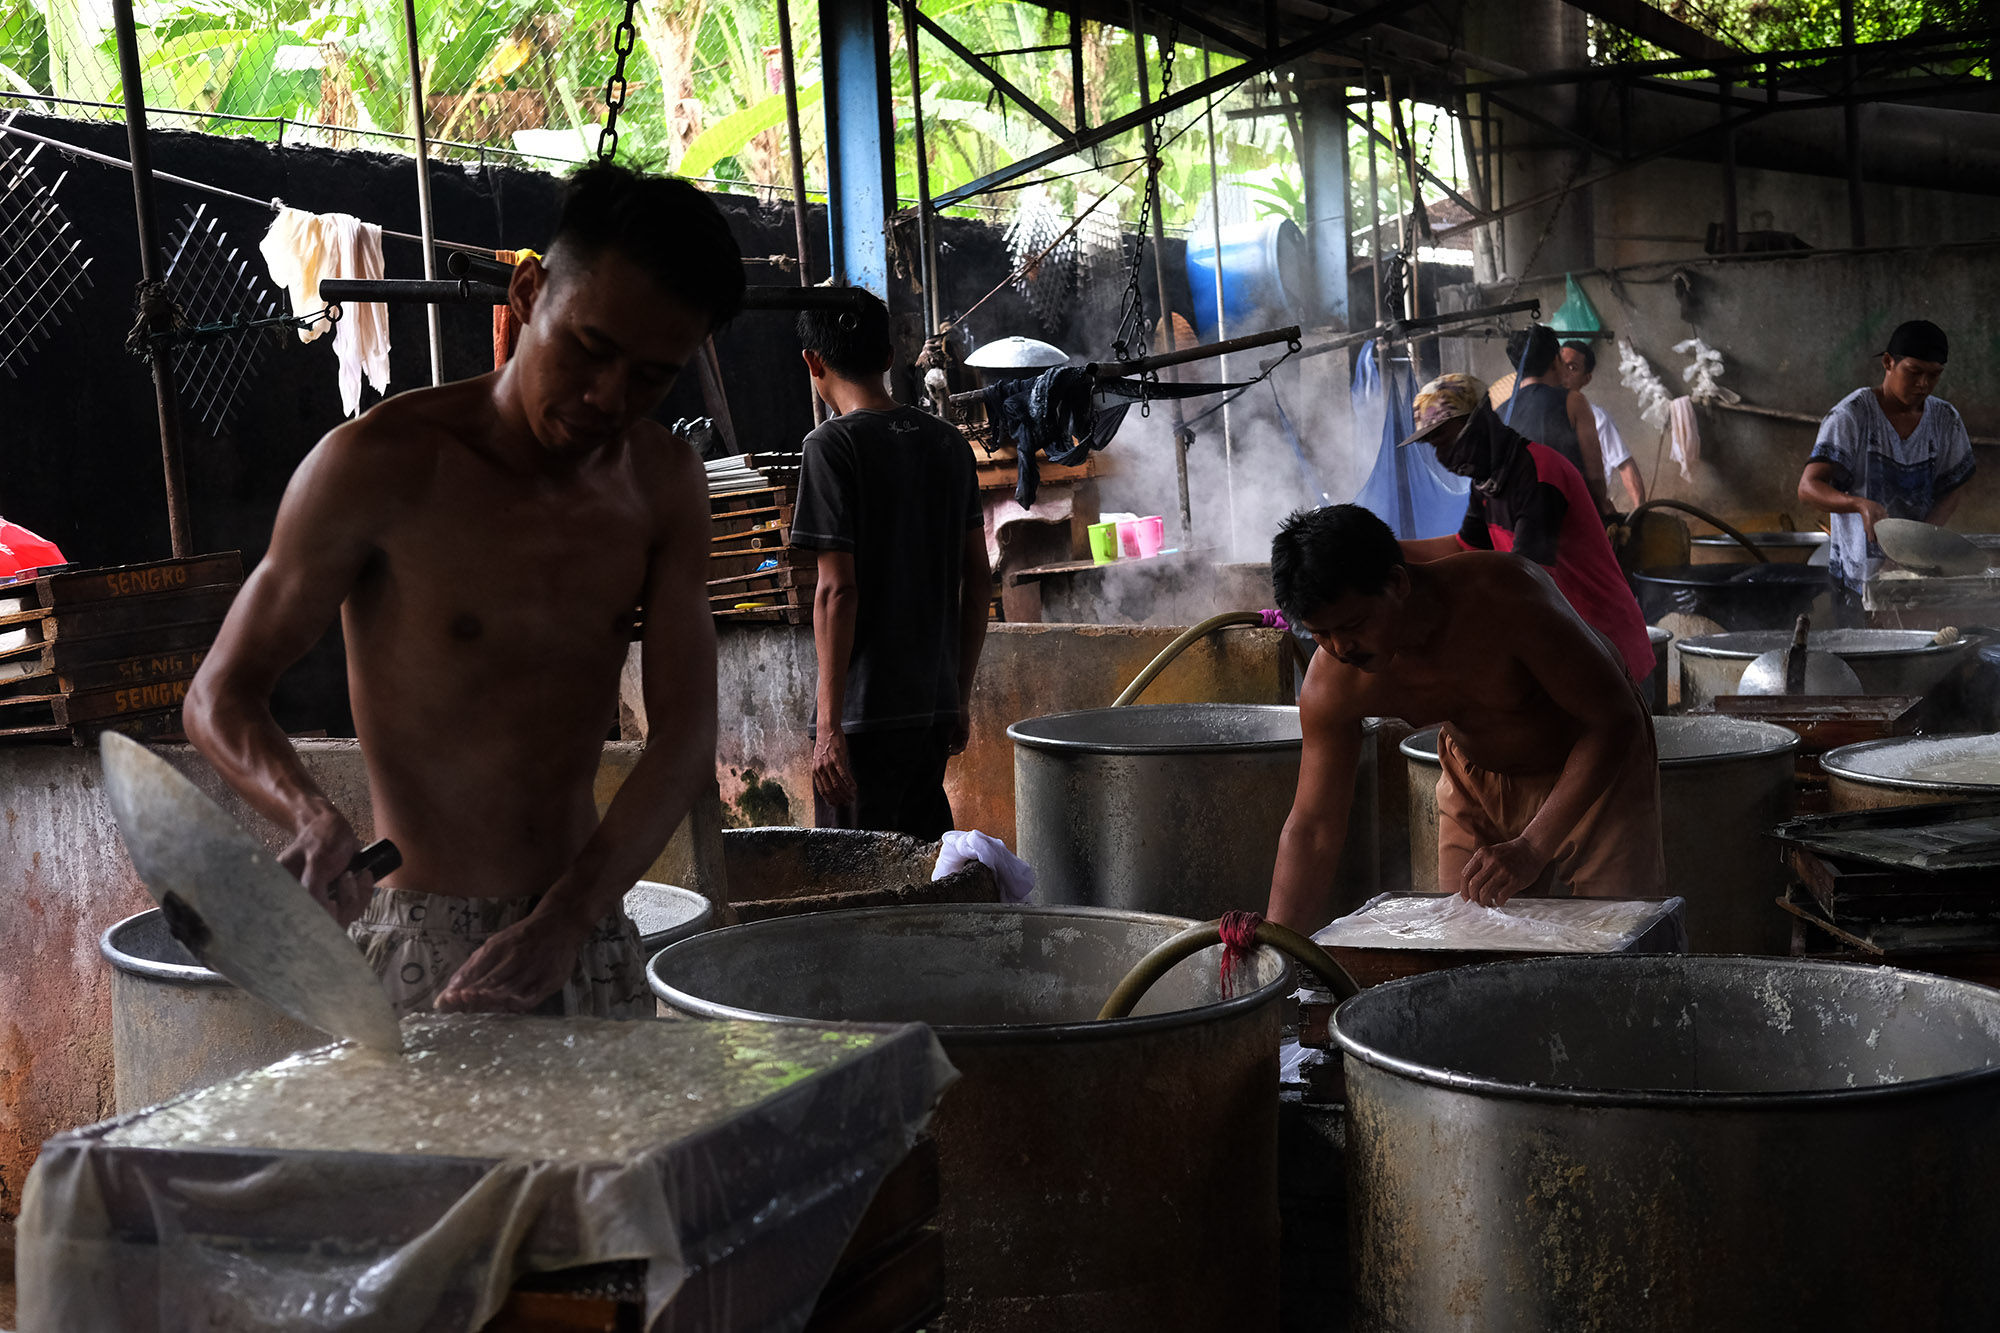 <p>Pekerja menyelesaikan proses pembuatan tahu di industri rumahan kawasan Duren Tiga, Jakarta Selatan, Senin, 19 Oktober 2020. Foto: Ismail Pohan/TrenAsia</p>
